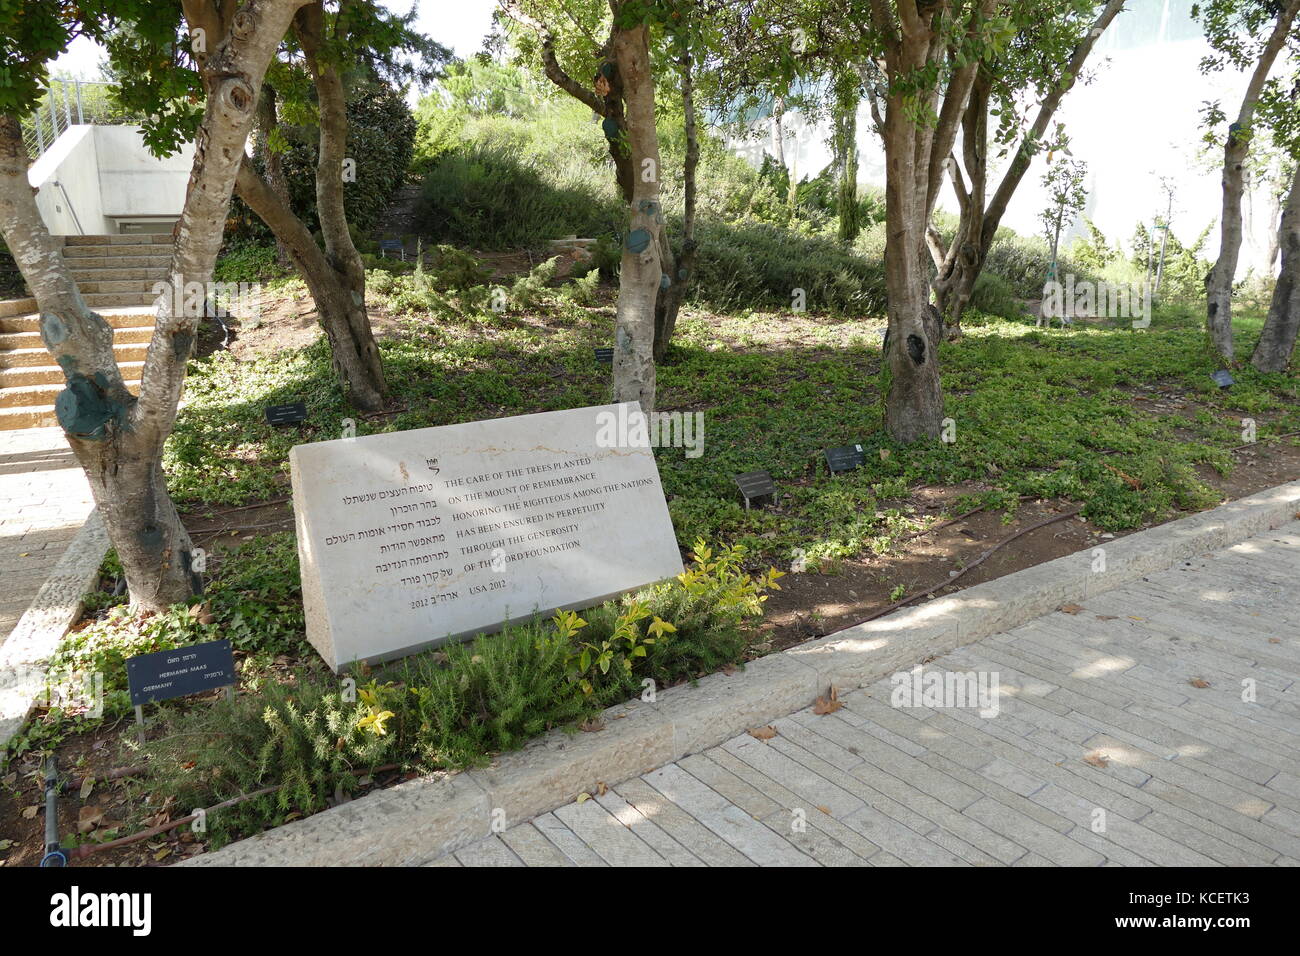 Ford Foundation memorial à l'Avenue des Justes parmi les nations de Yad Vashem, Jérusalem (Israël). Les arbres sont plantés autour du site Yad Vashem en l'honneur de ces non-Juifs qui, au péril de leur propre vie, sauvé des Juifs pendant l'Holocauste. Banque D'Images